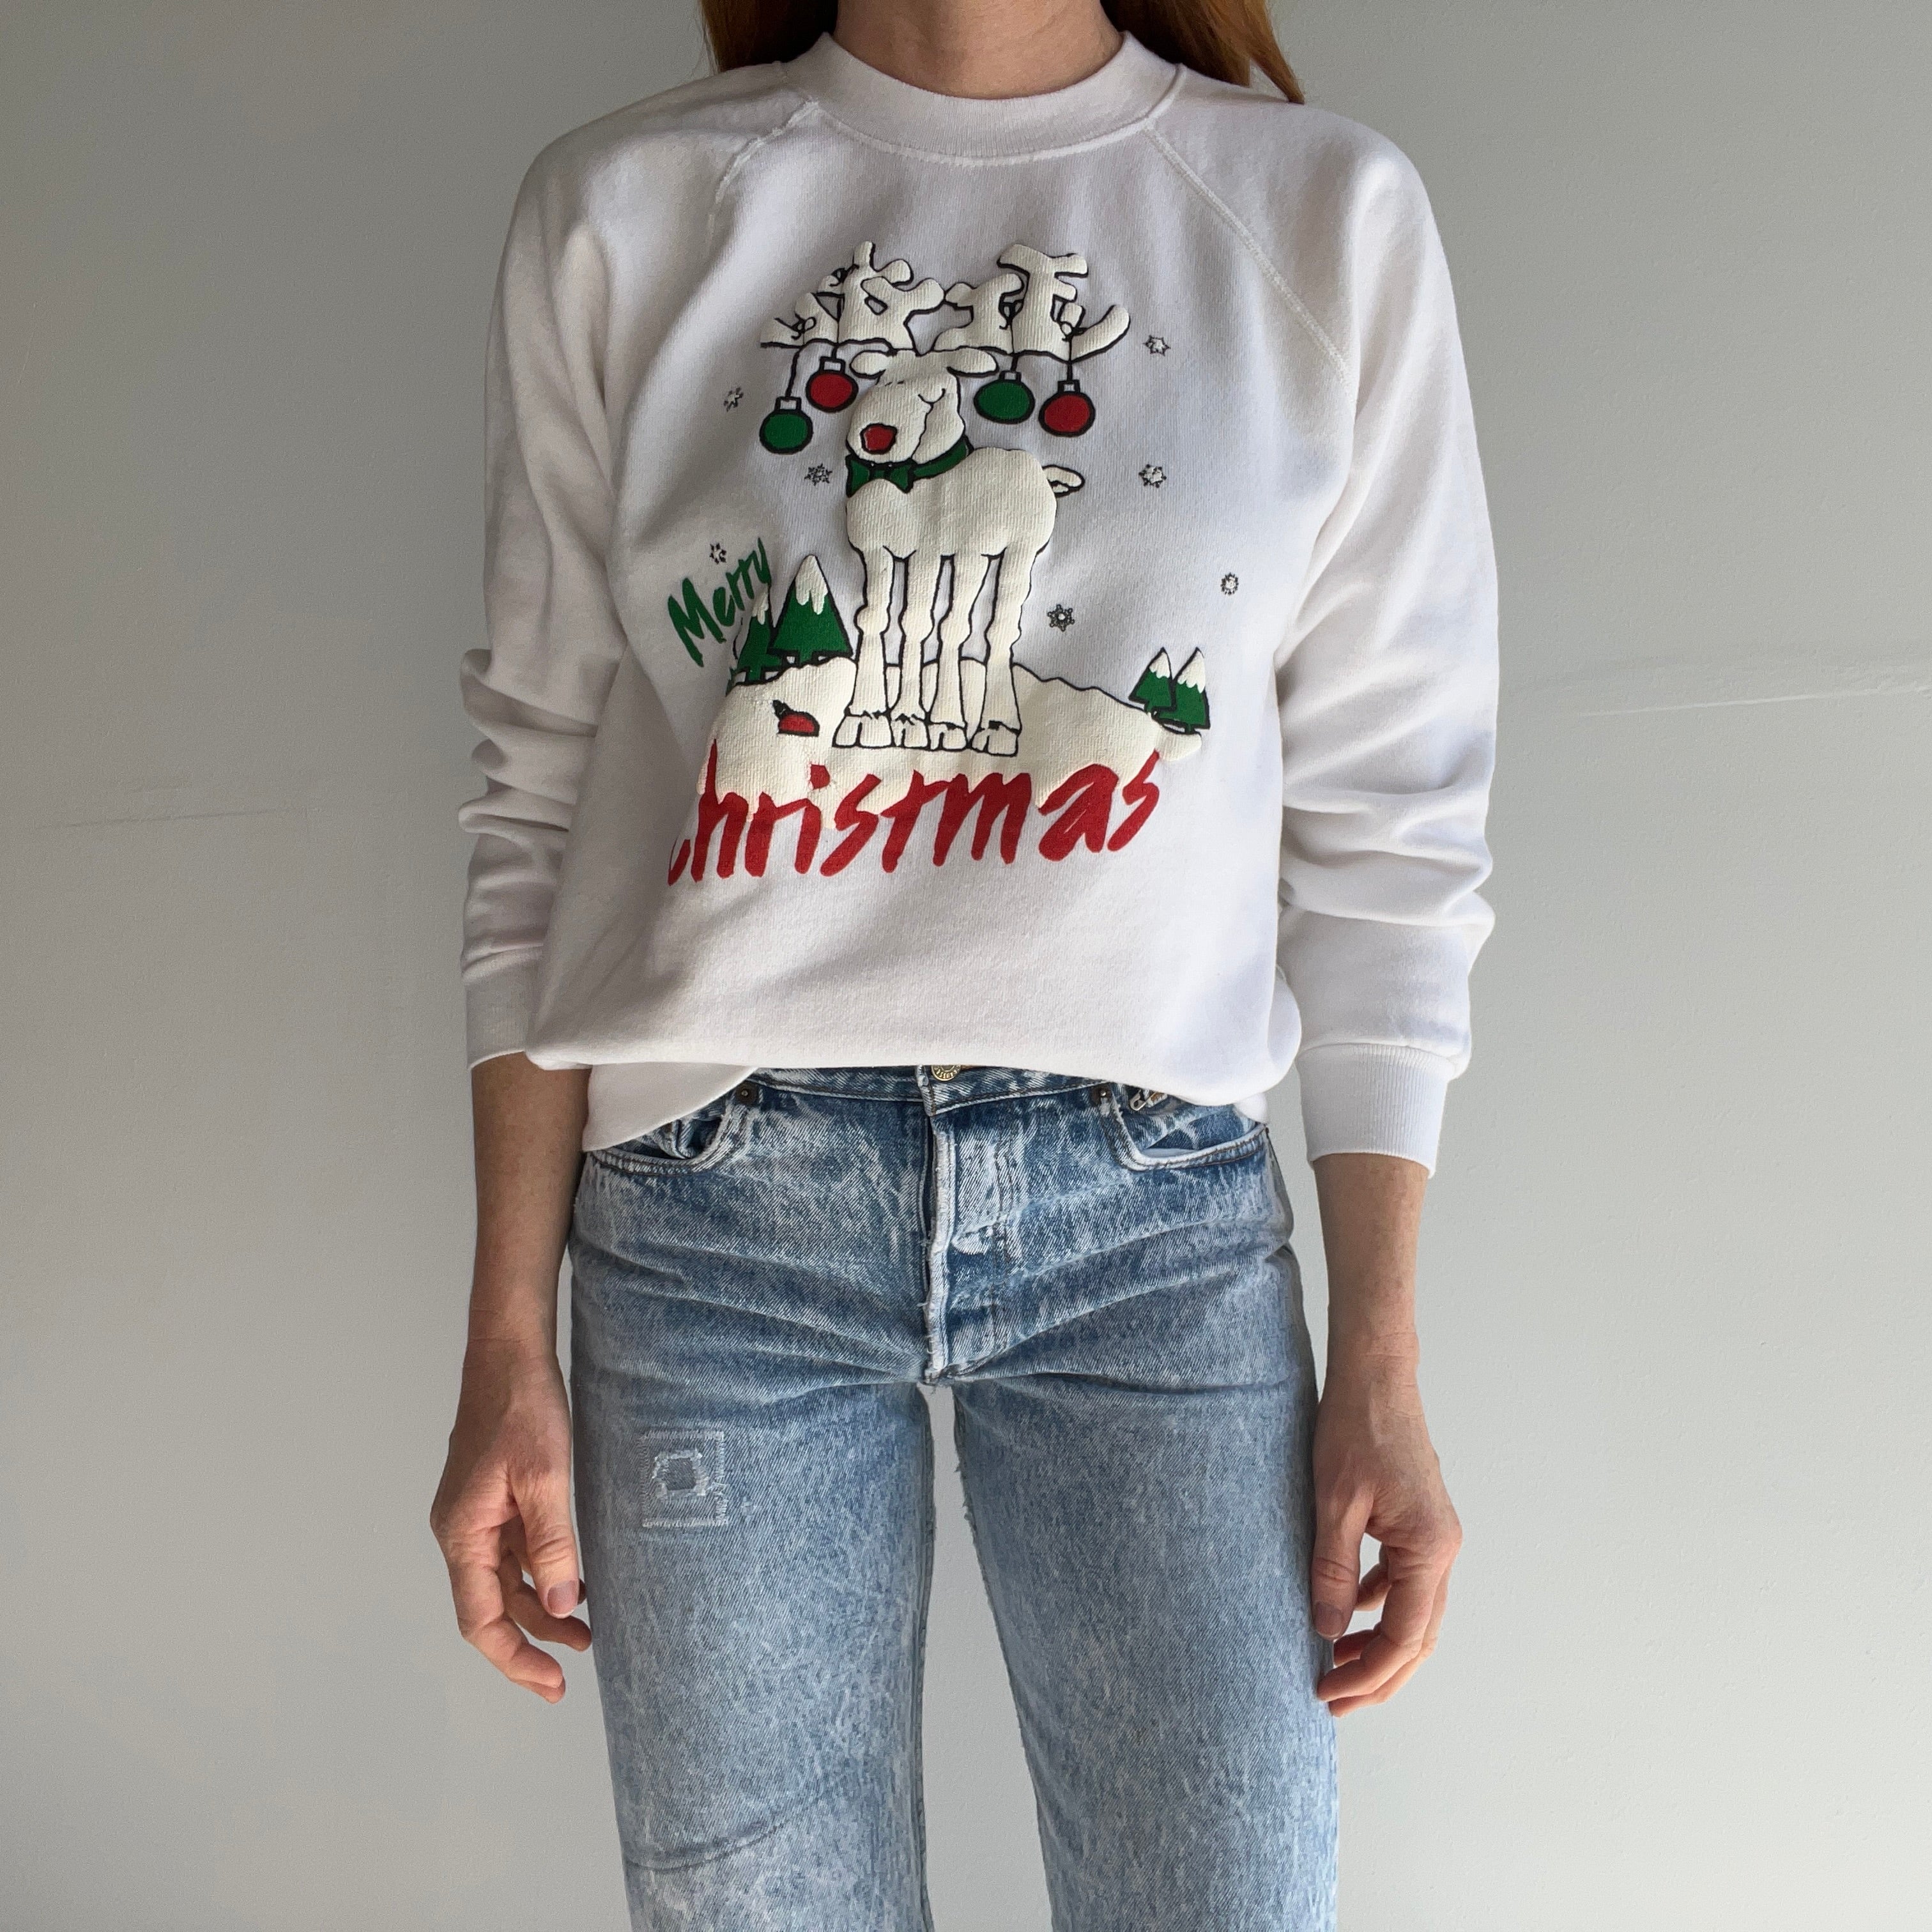 1980s Merry Christmas Sweatshirt